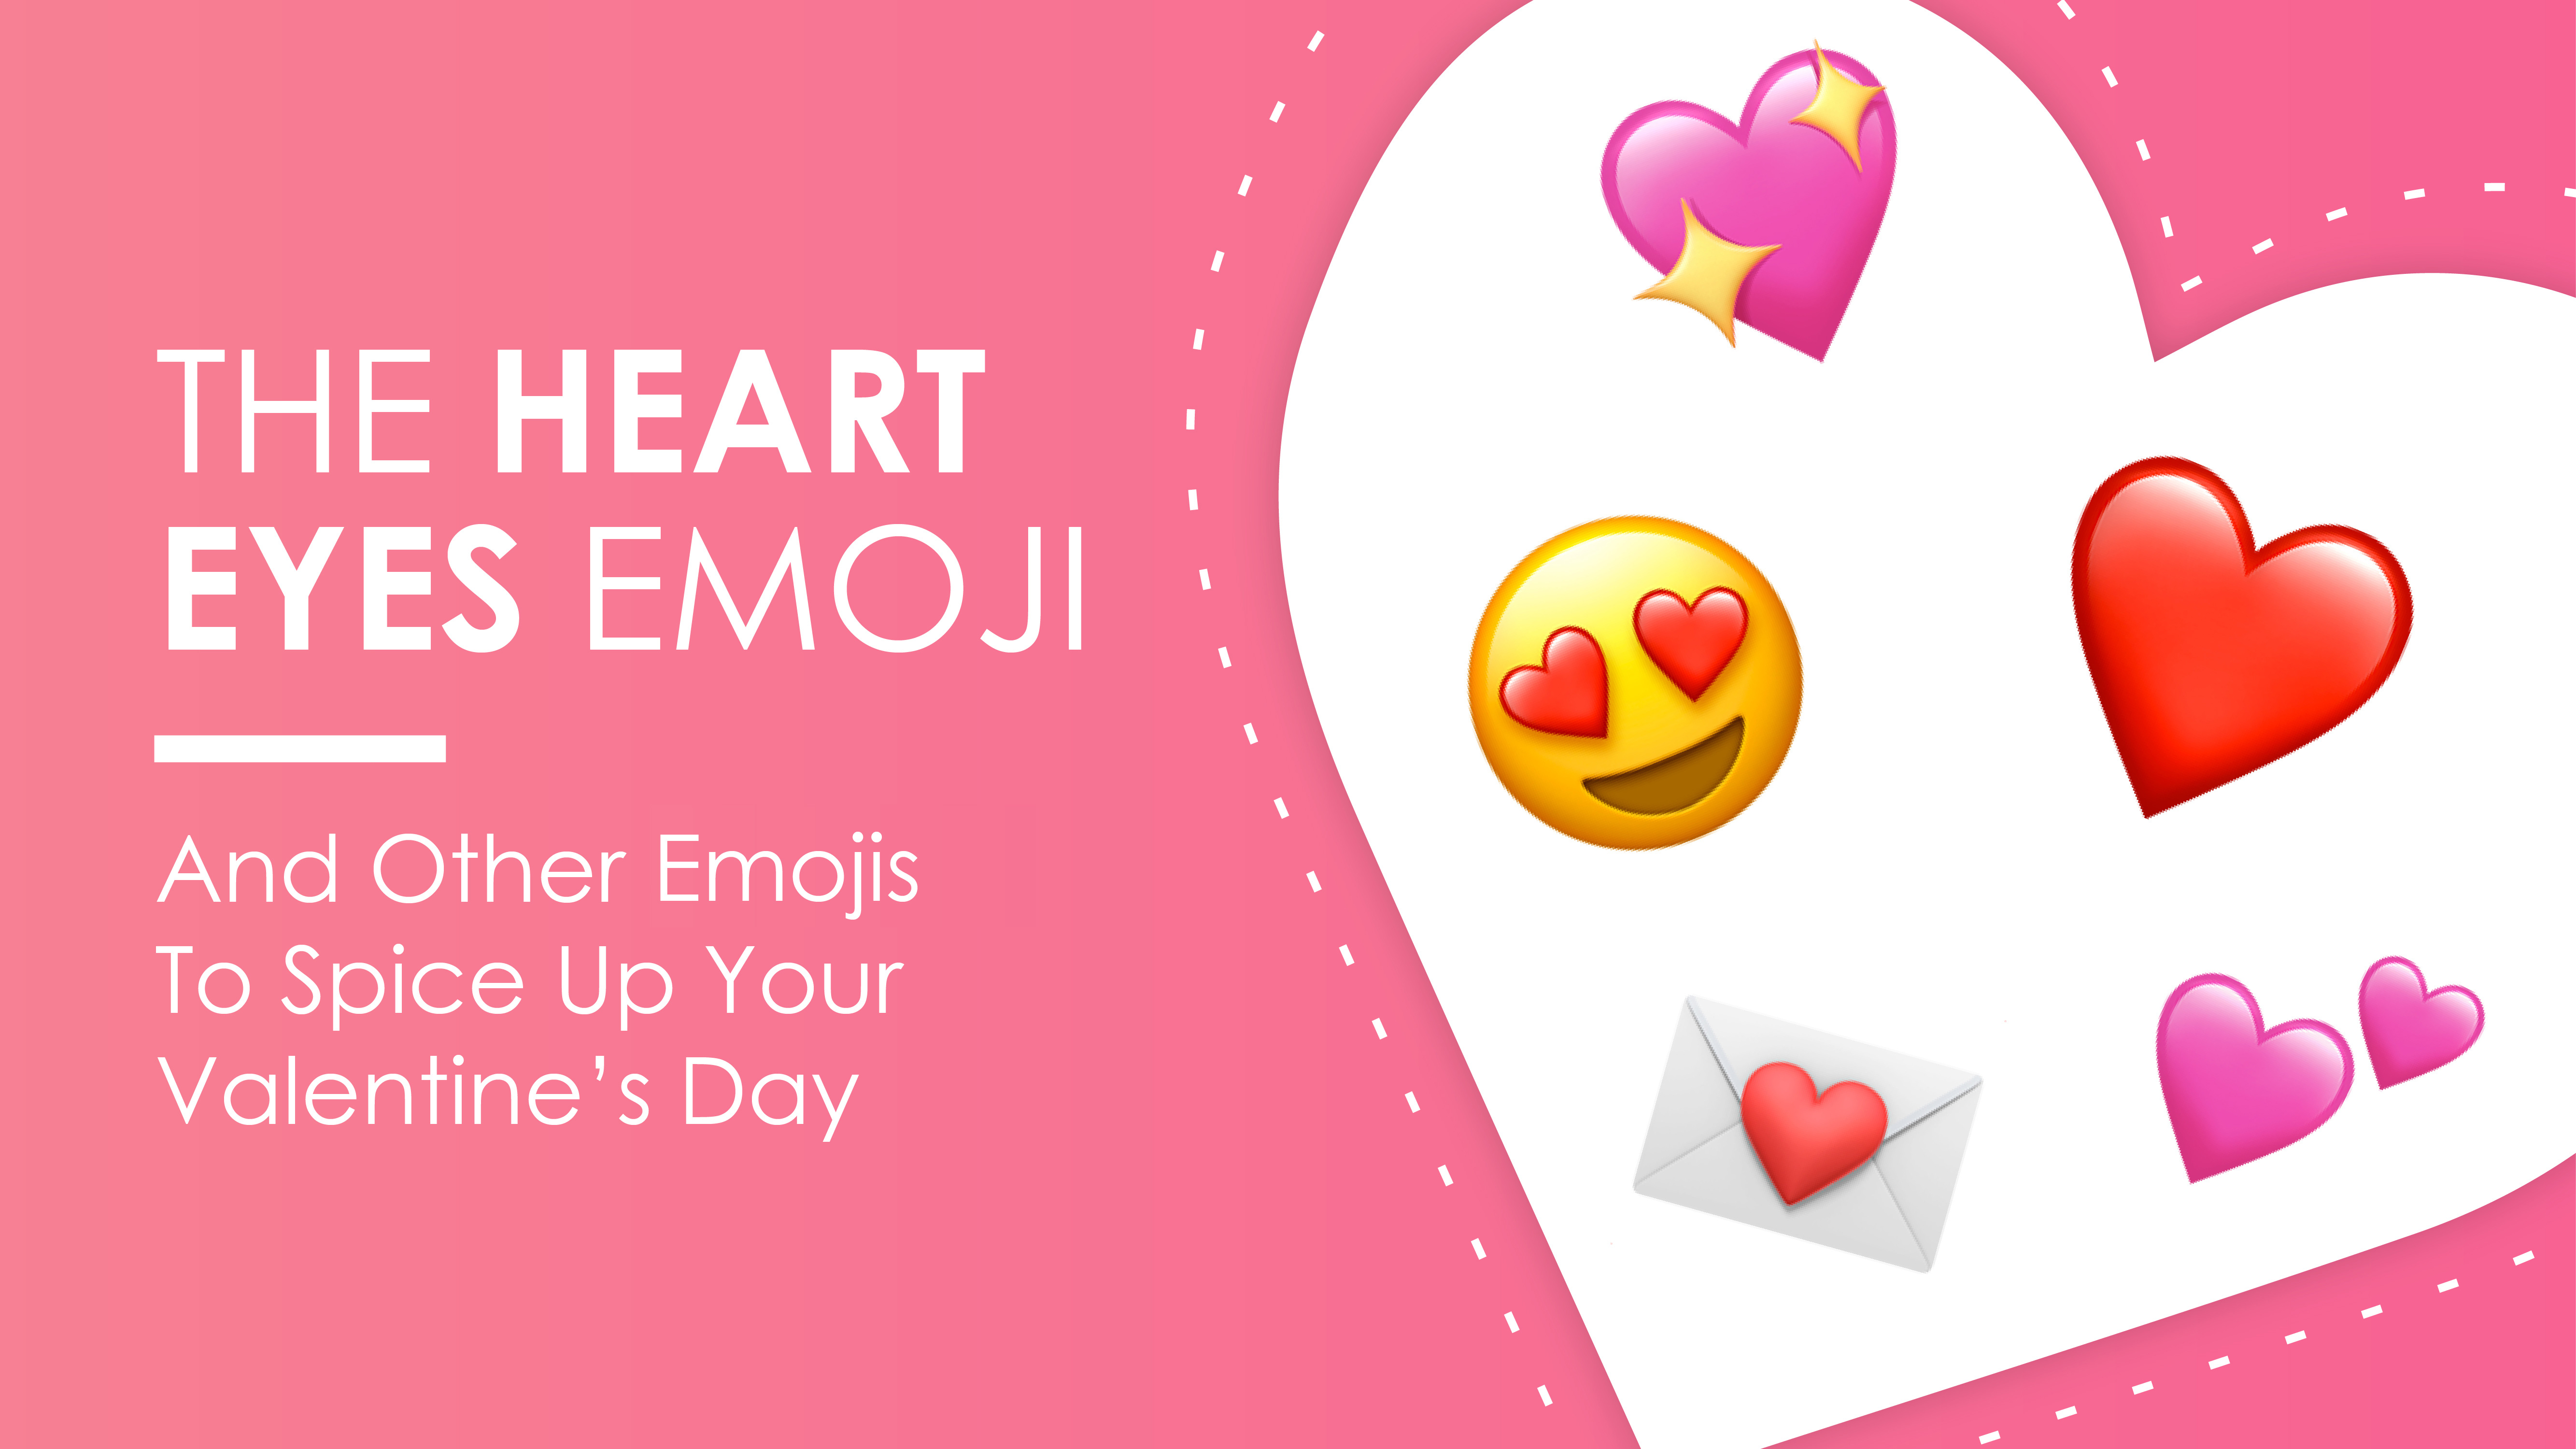 Heart emoji sent me a she Here's what